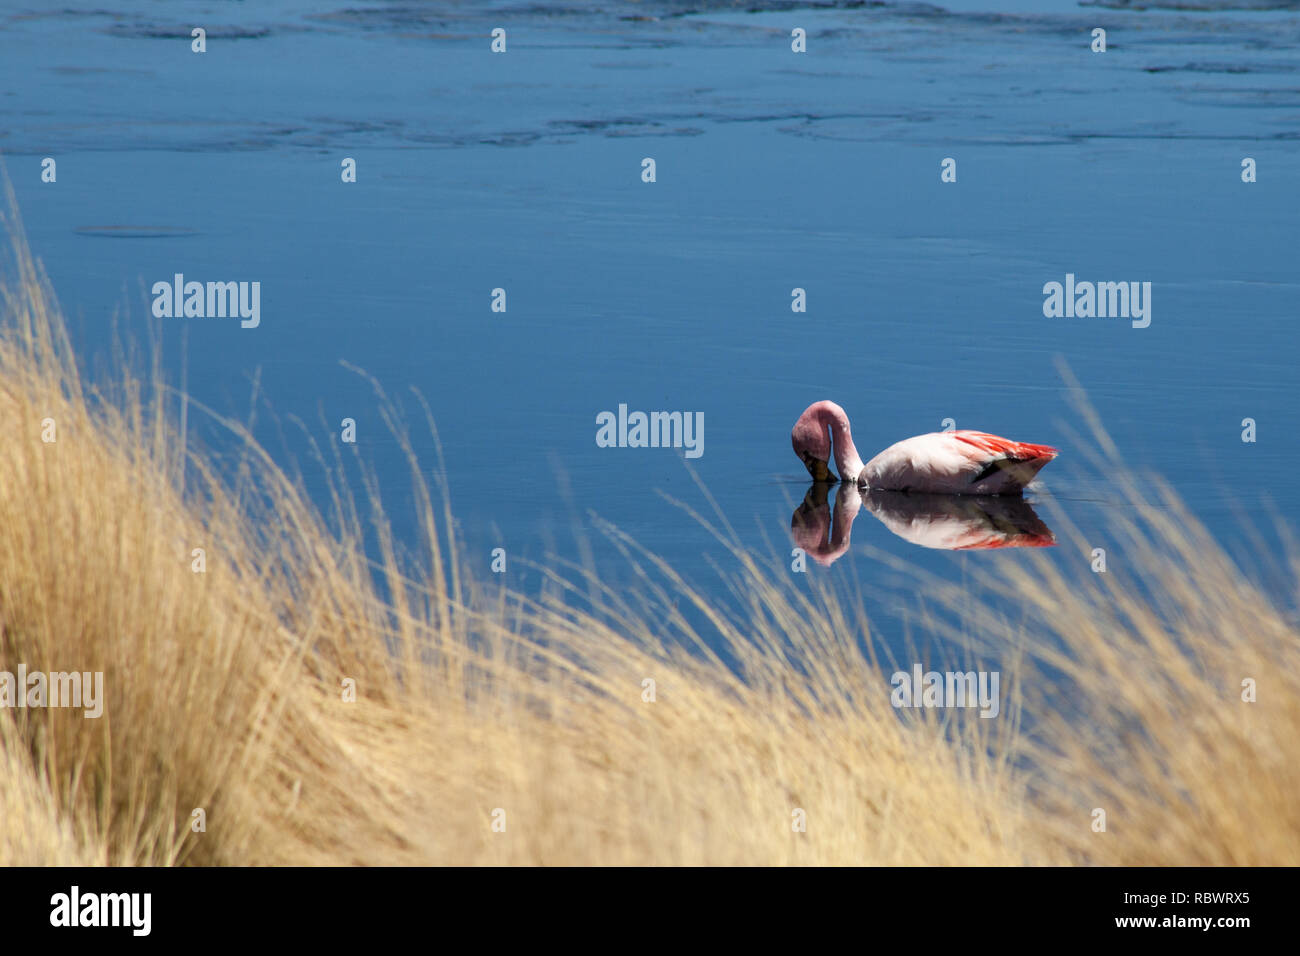 Der Spiegel wie die Oberfläche des Sees spiegelt eine anmutige und beruhigende Szene als einzigen Flamingo schwimmt träge und führt in der Nähe der grasartigen Waters Edge. Stockfoto